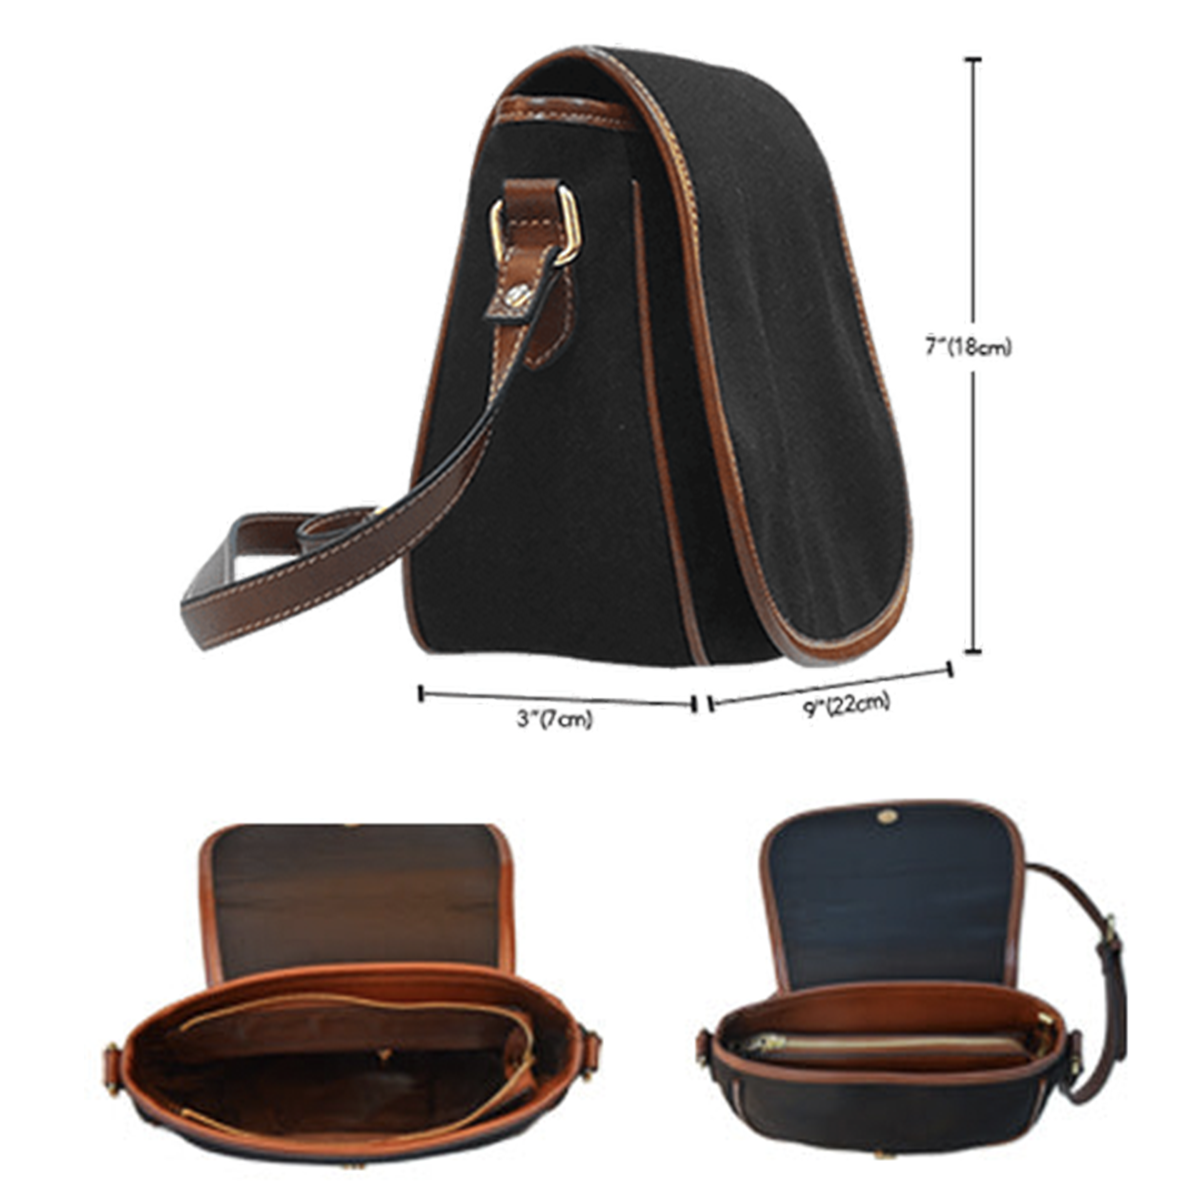 Elphinstone Tartan Saddle Handbags